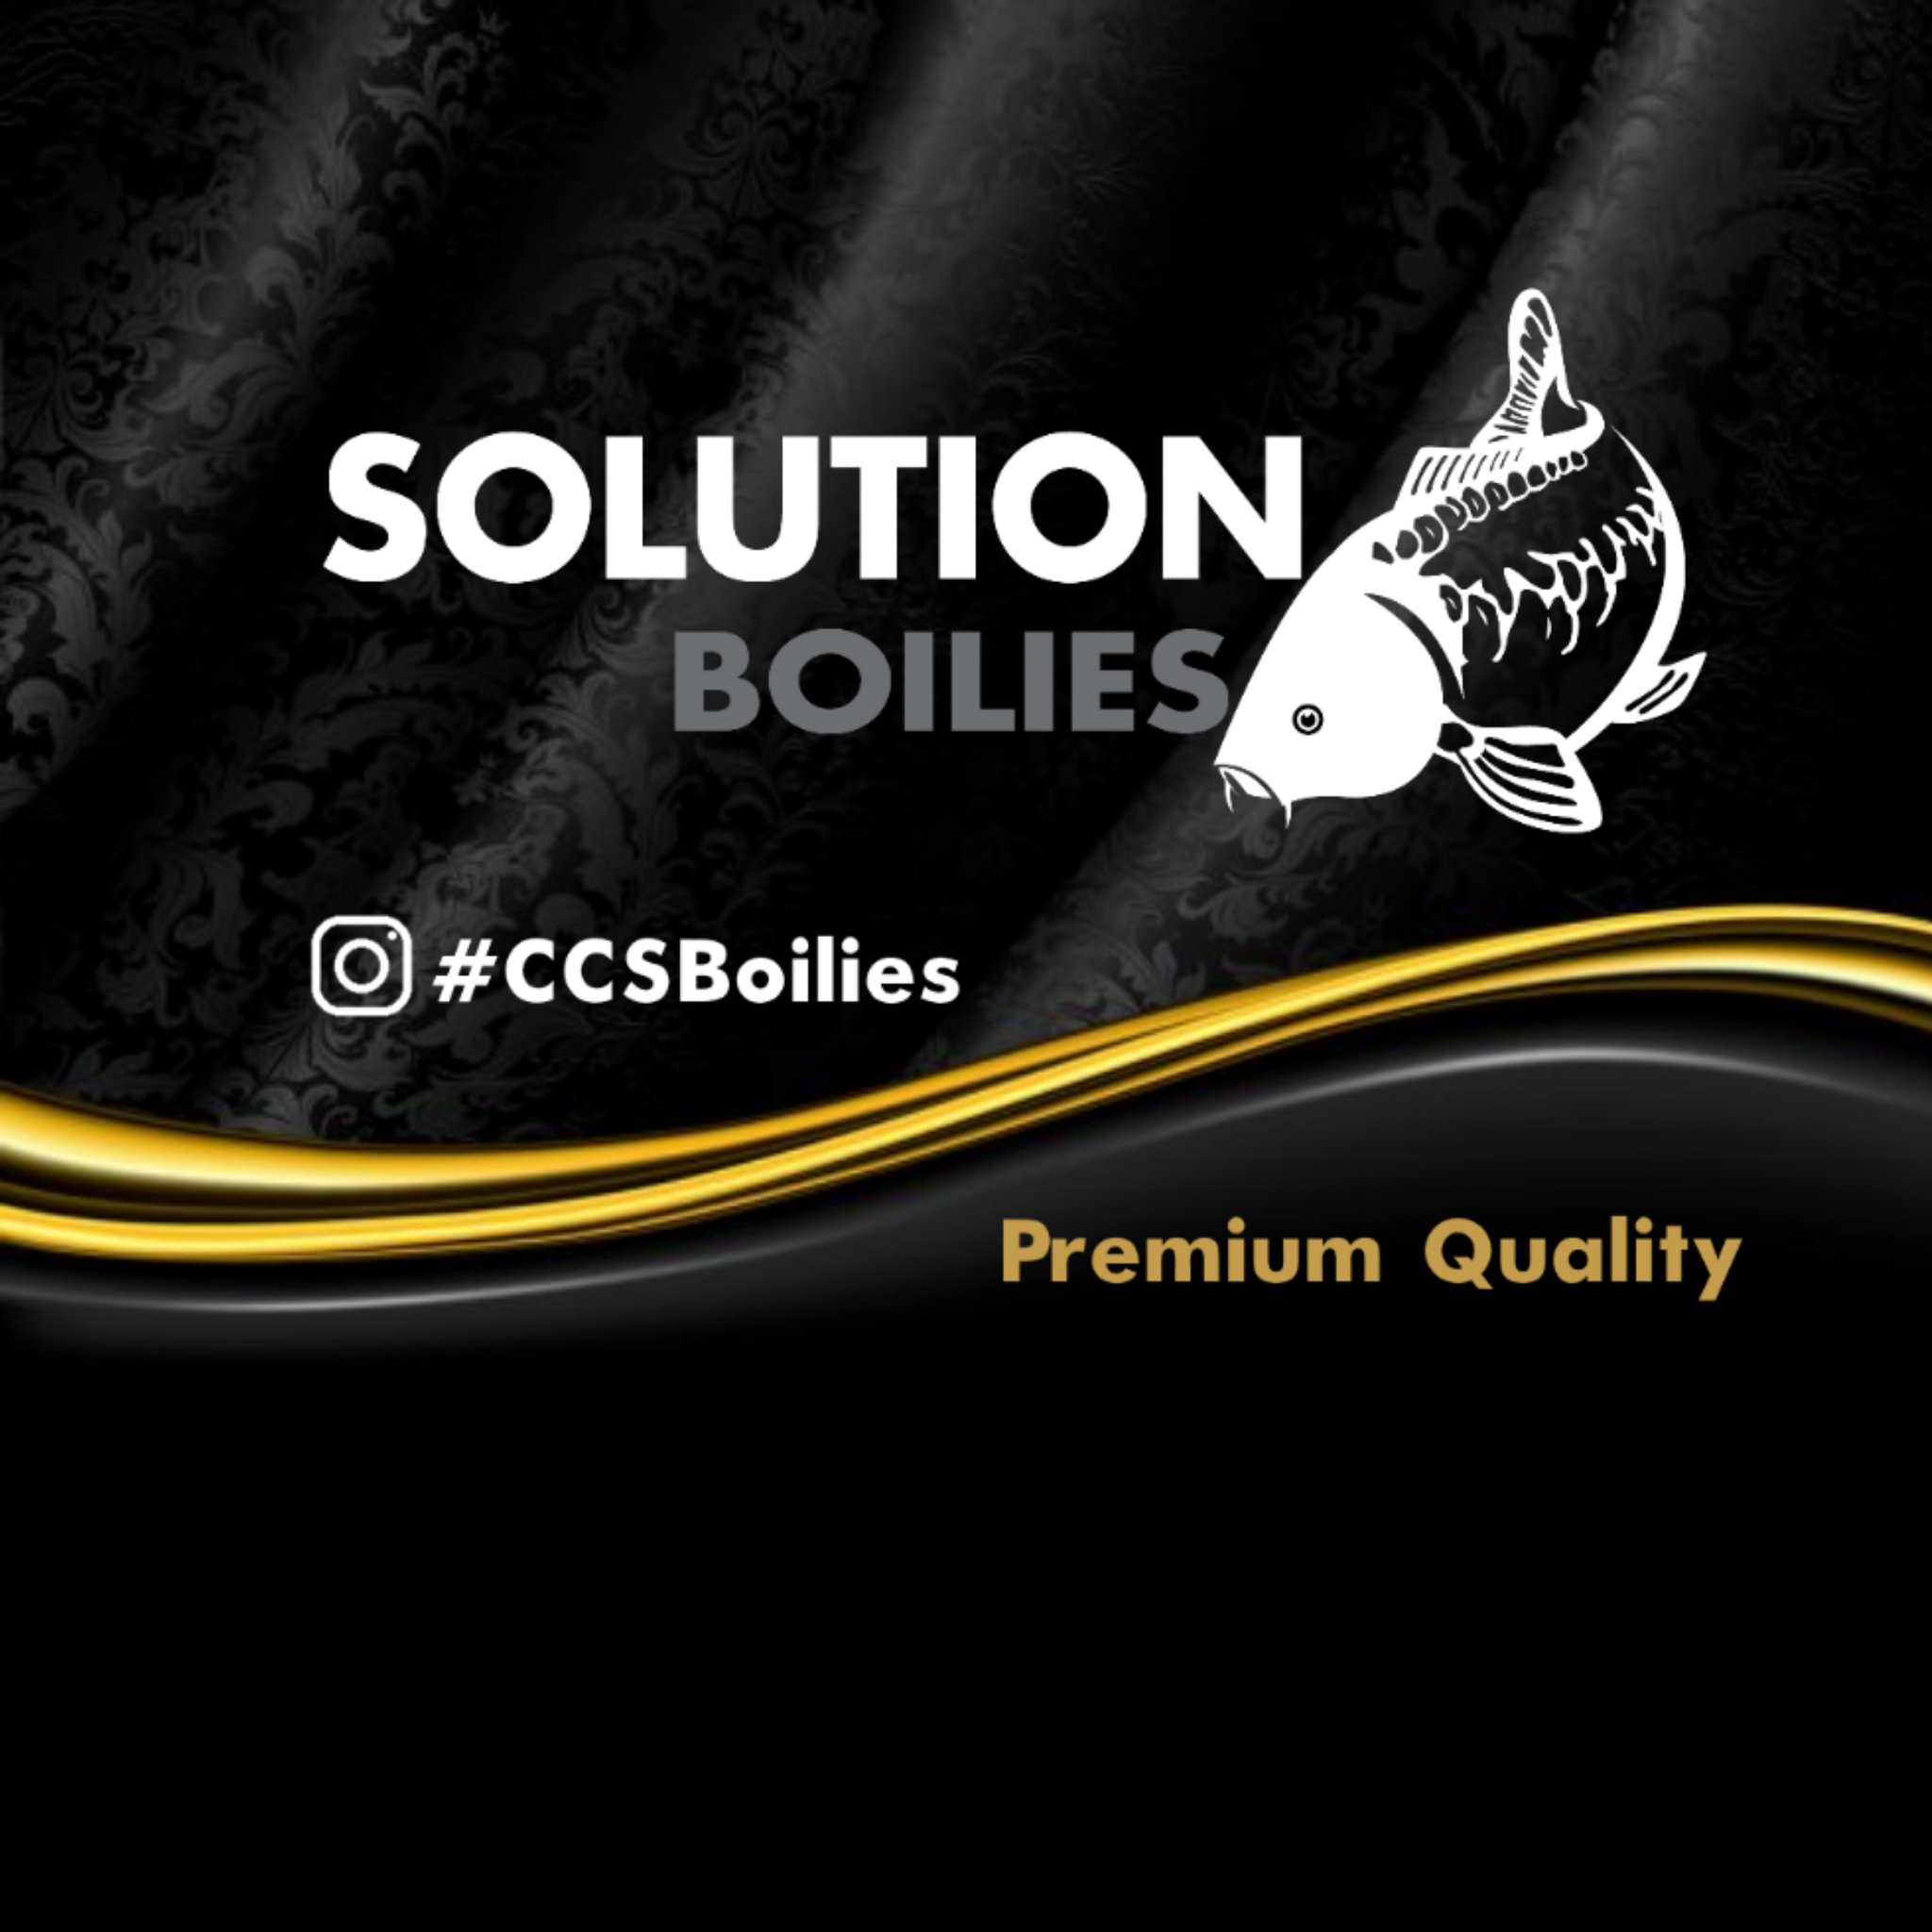 CC Solution Boilies